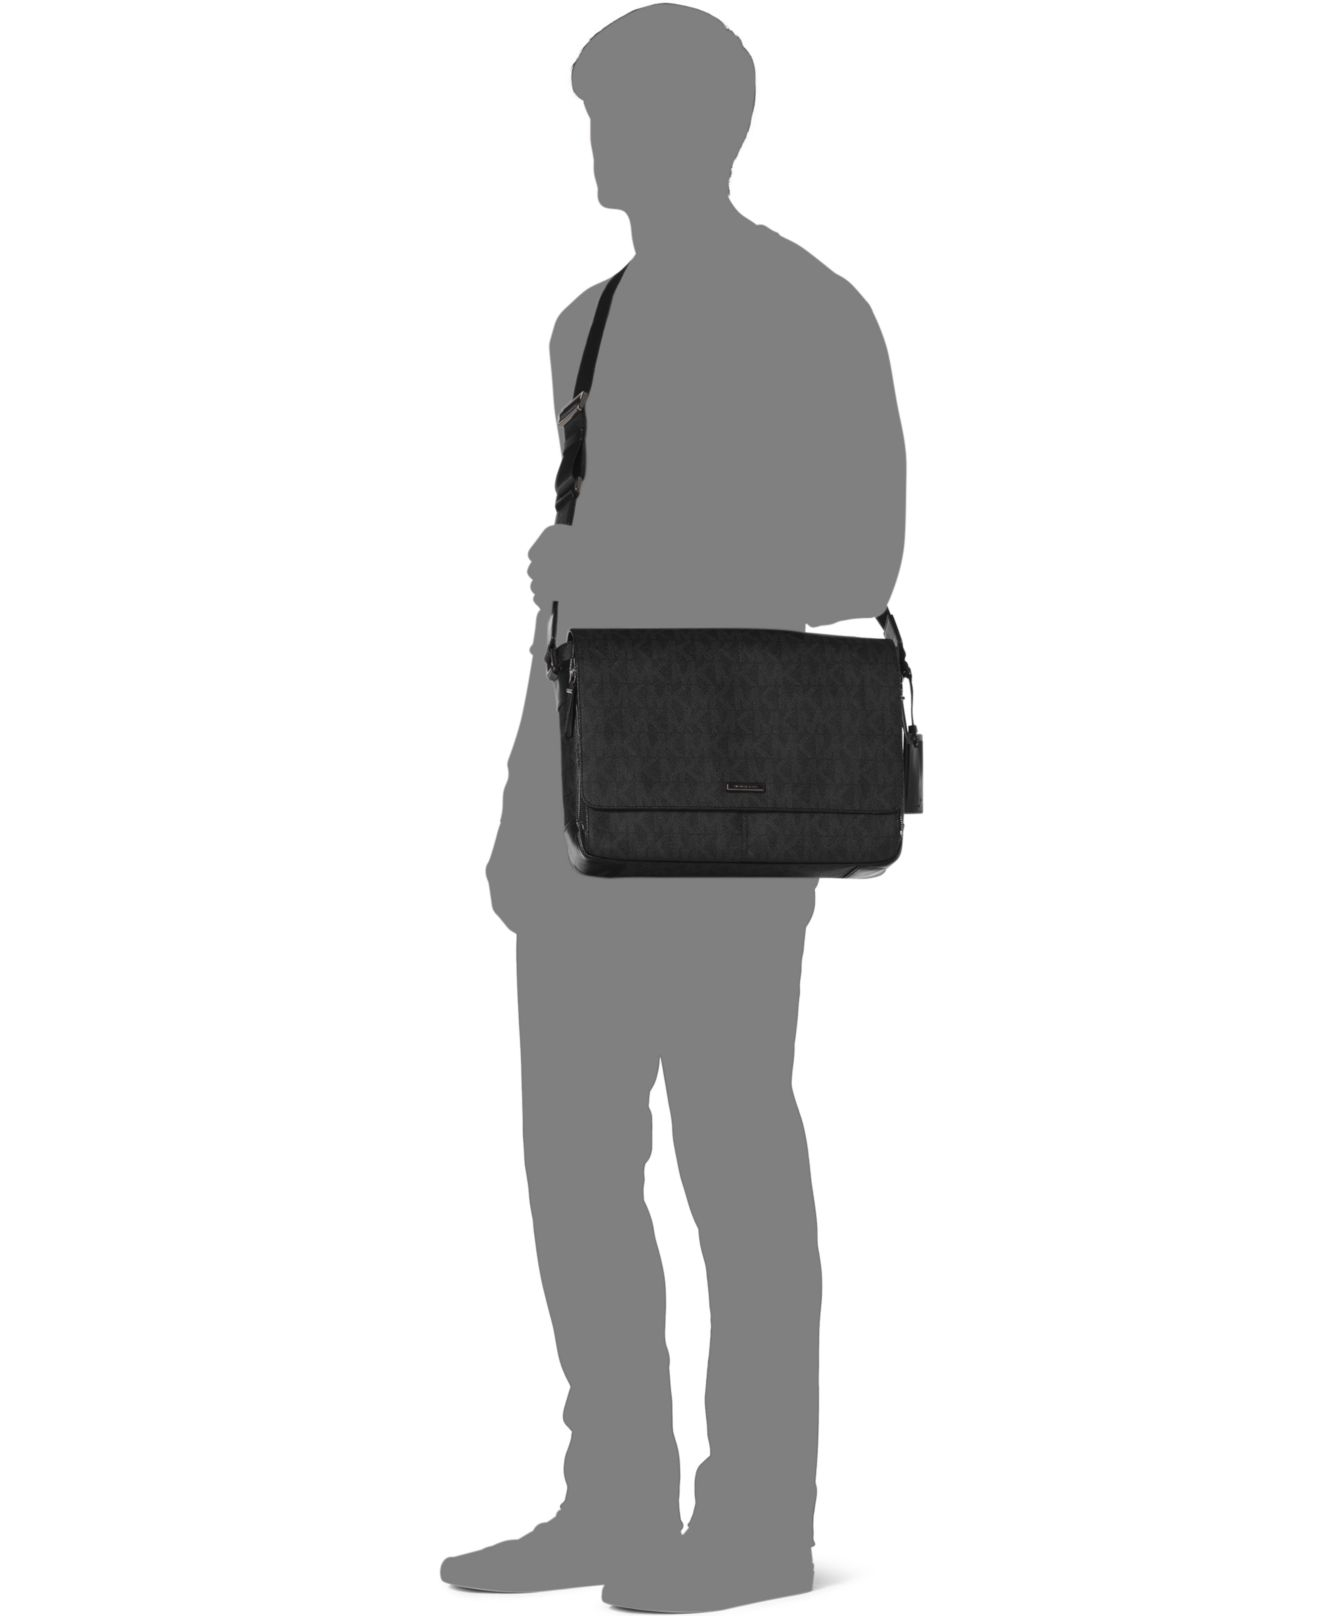 Michael Kors Jet Set Travel Large Saffiano Messenger Bag in Black